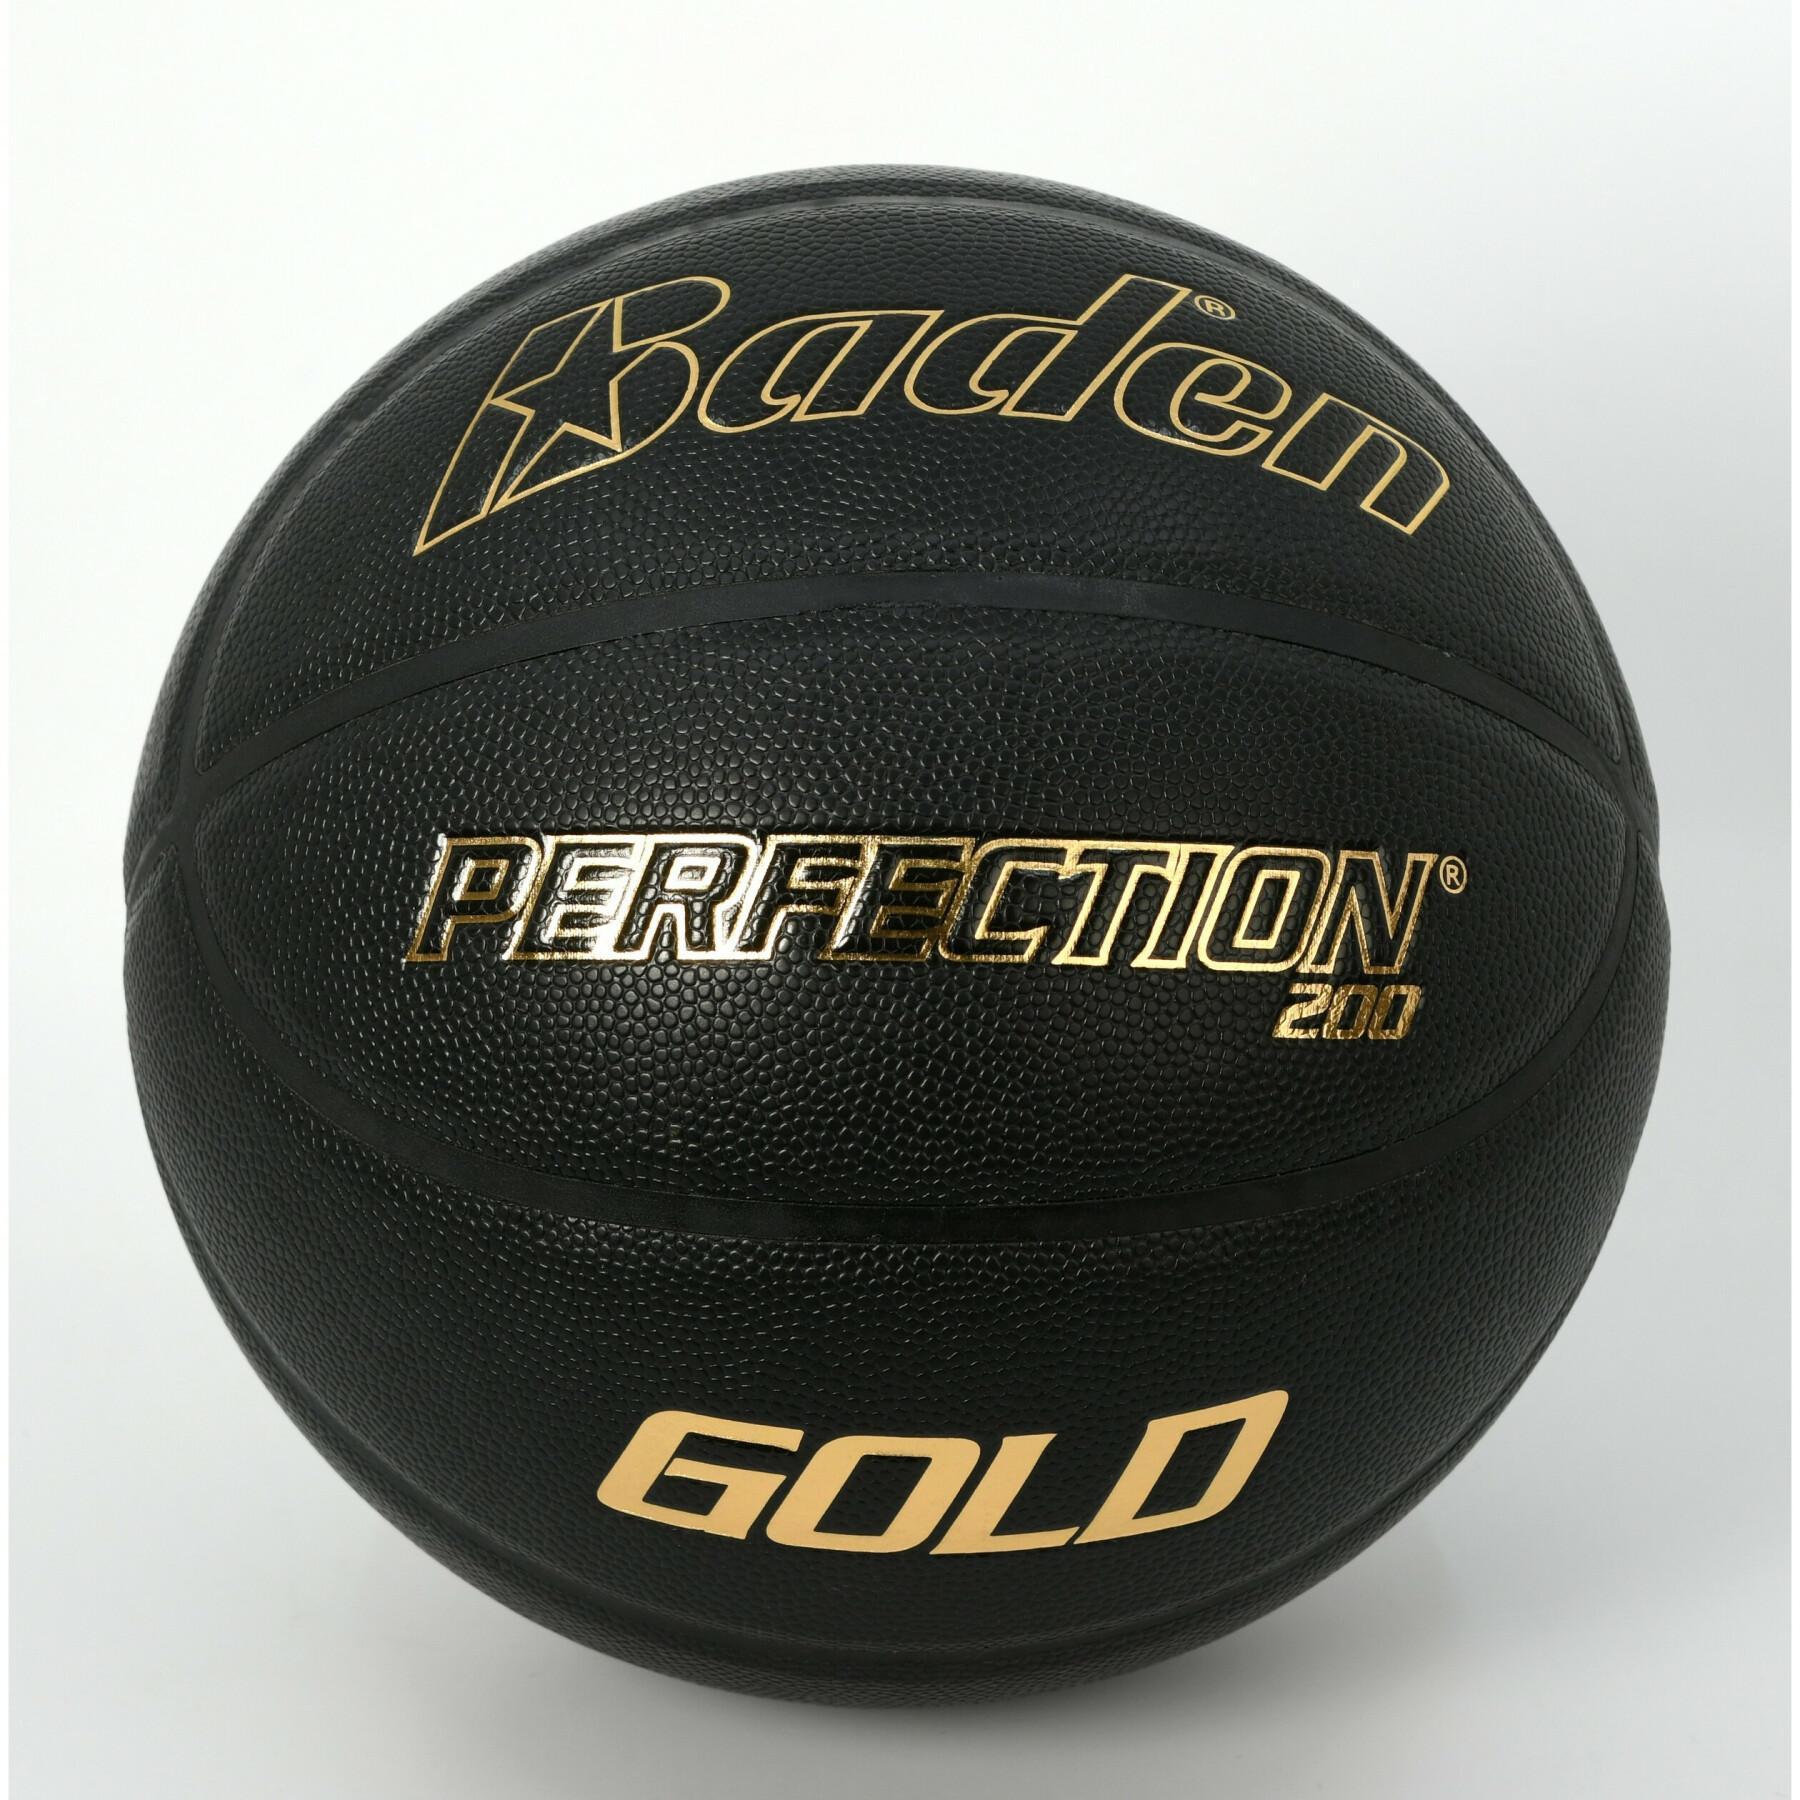 Piłka do koszykówki Baden Sports Perfection